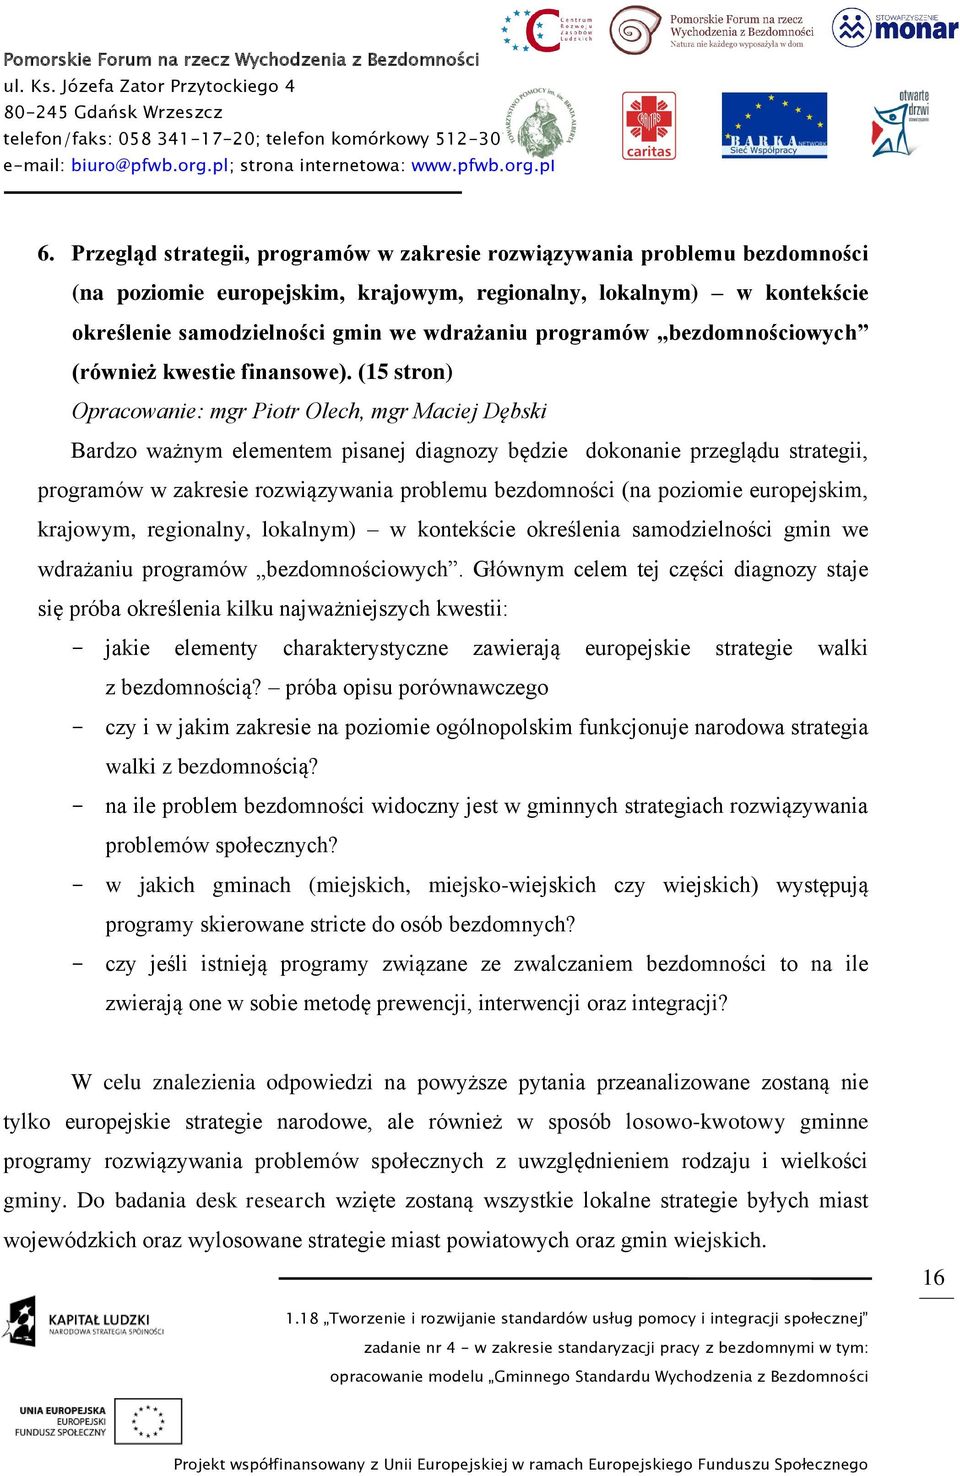 (15 stron) Opracowanie: mgr Piotr Olech, mgr Maciej Dębski Bardzo ważnym elementem pisanej diagnozy będzie dokonanie przeglądu strategii, programów w zakresie rozwiązywania problemu bezdomności (na